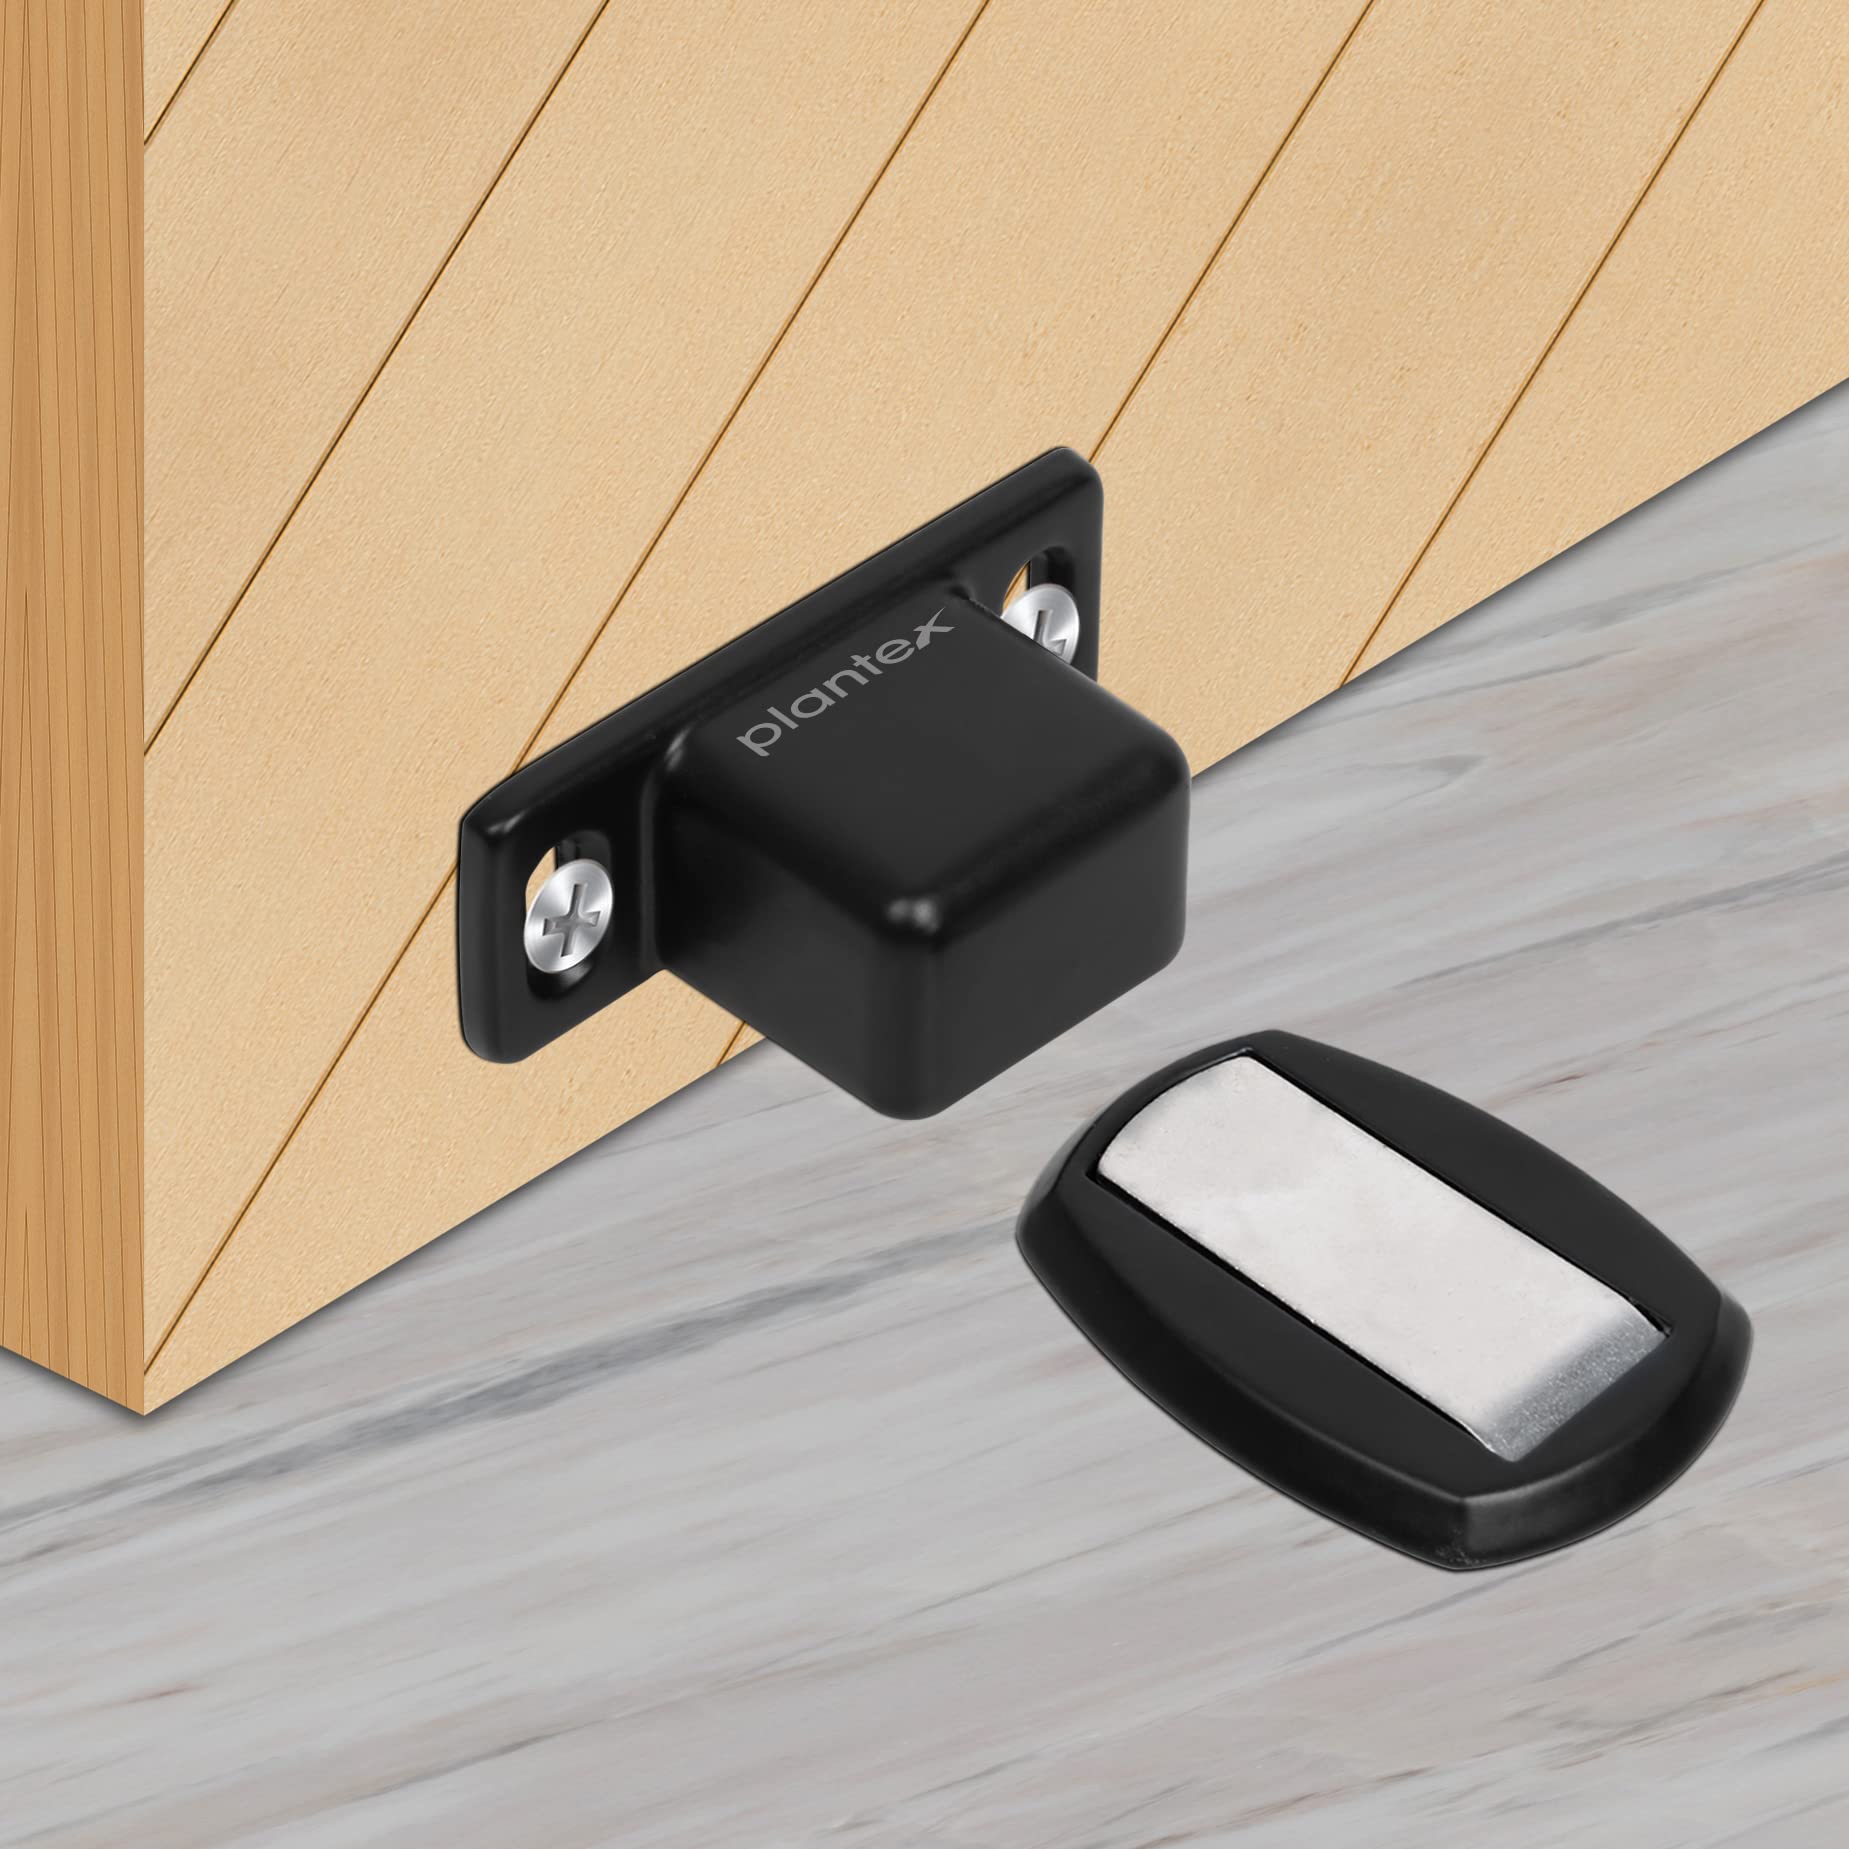 Plantex Heavy Duty Floor Mounted Magnatic Door Stoppper for Home/Door Holder/Door Stopper for Home/Hotel/Office (184 – Black)